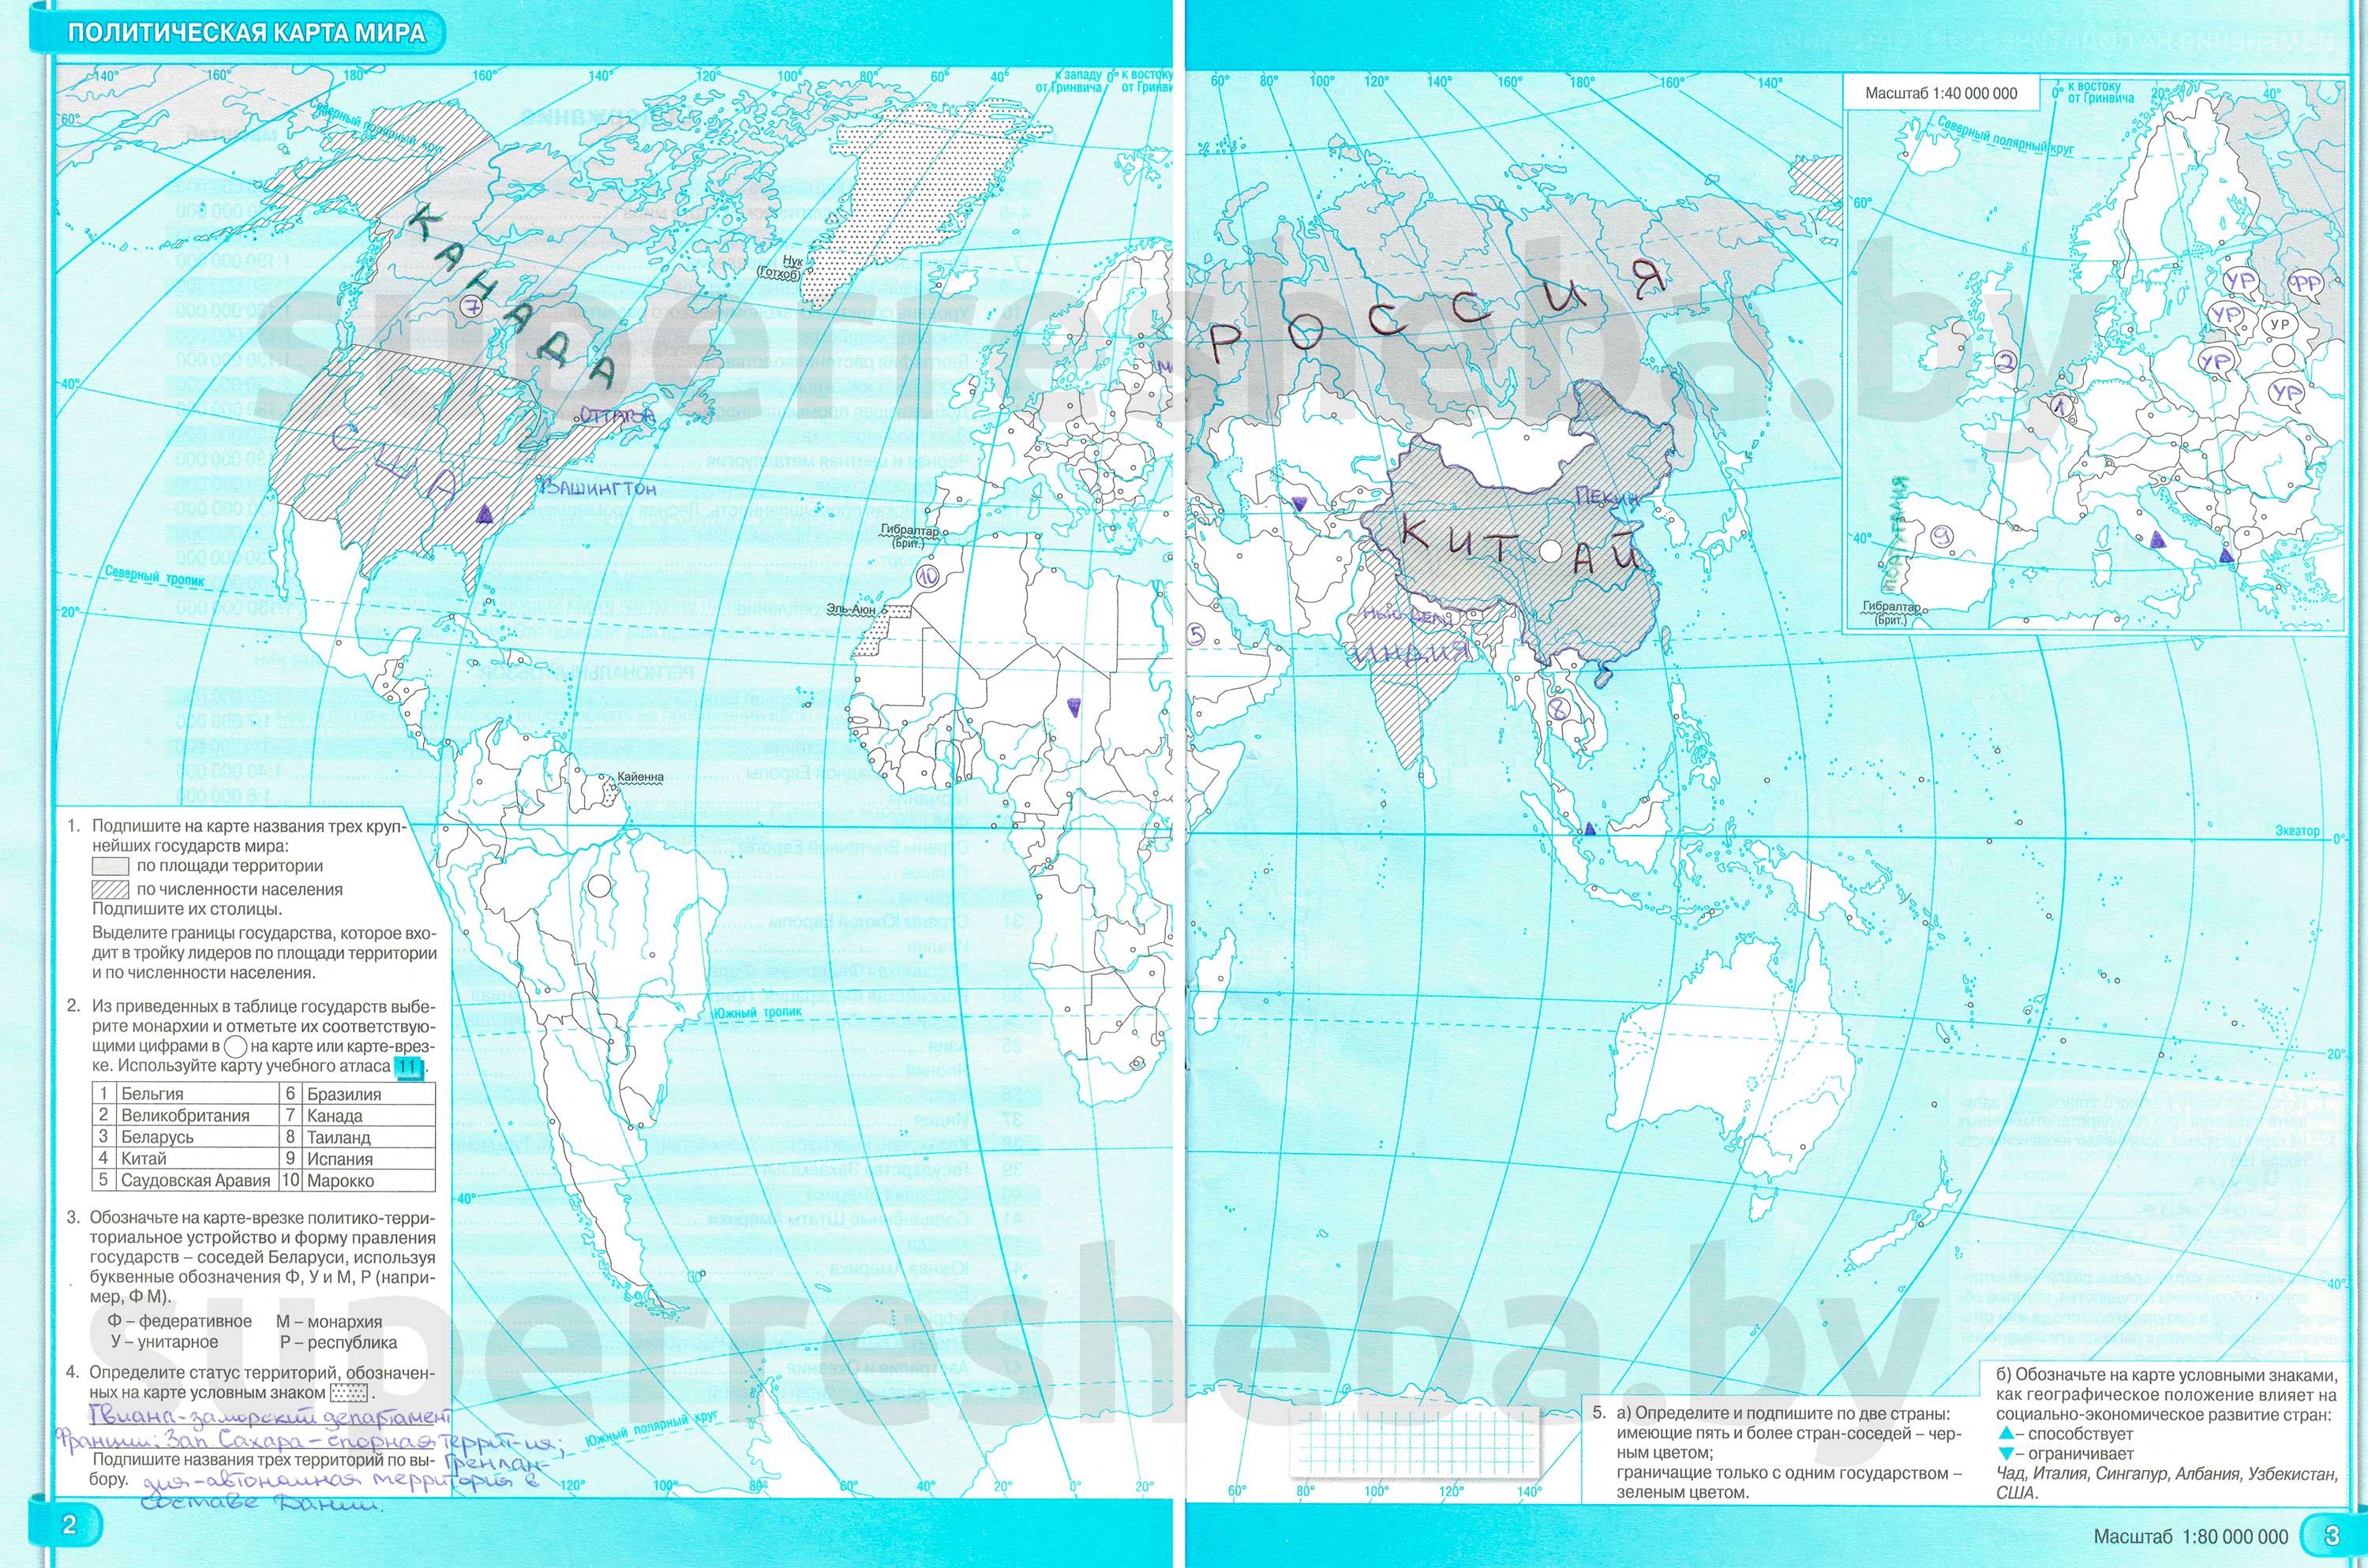 Политическая карта мира,страницы 2-3 - решение